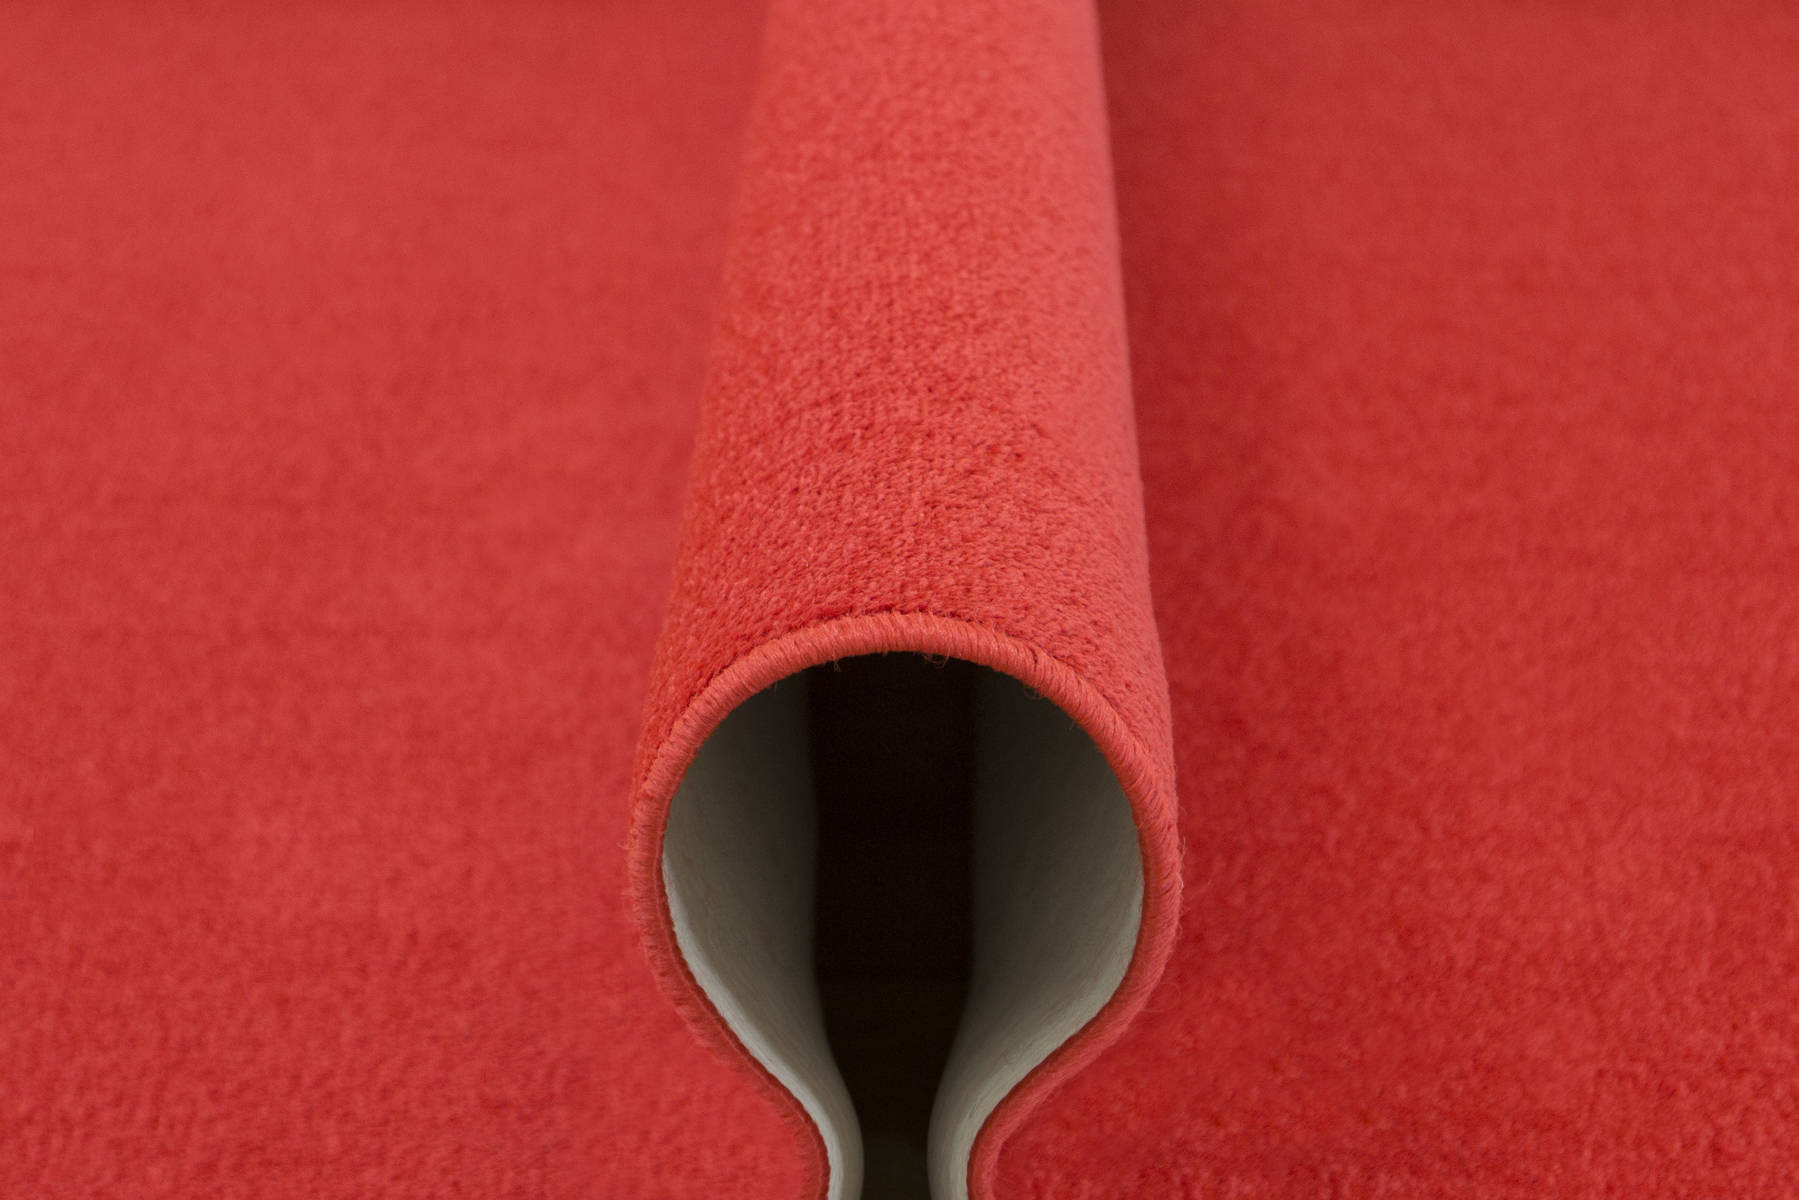 Metrážny koberec Dynasty 15 červený